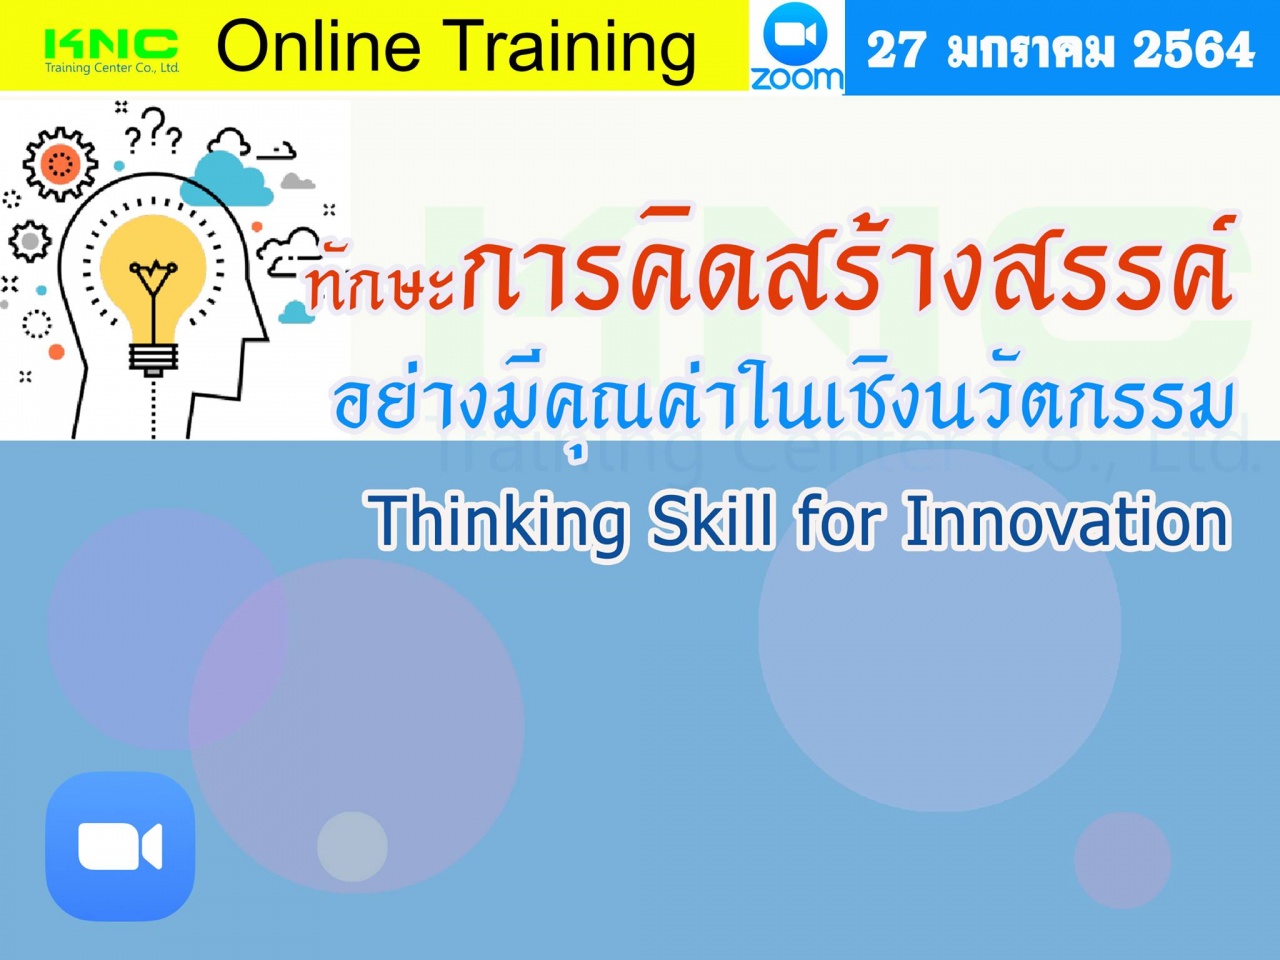 สัมมนา Online : ทักษะการคิดสร้างสรรค์อย่างมีคุณค่าในเชิงนวัตกรรม (Thinking Skill for Innovation)